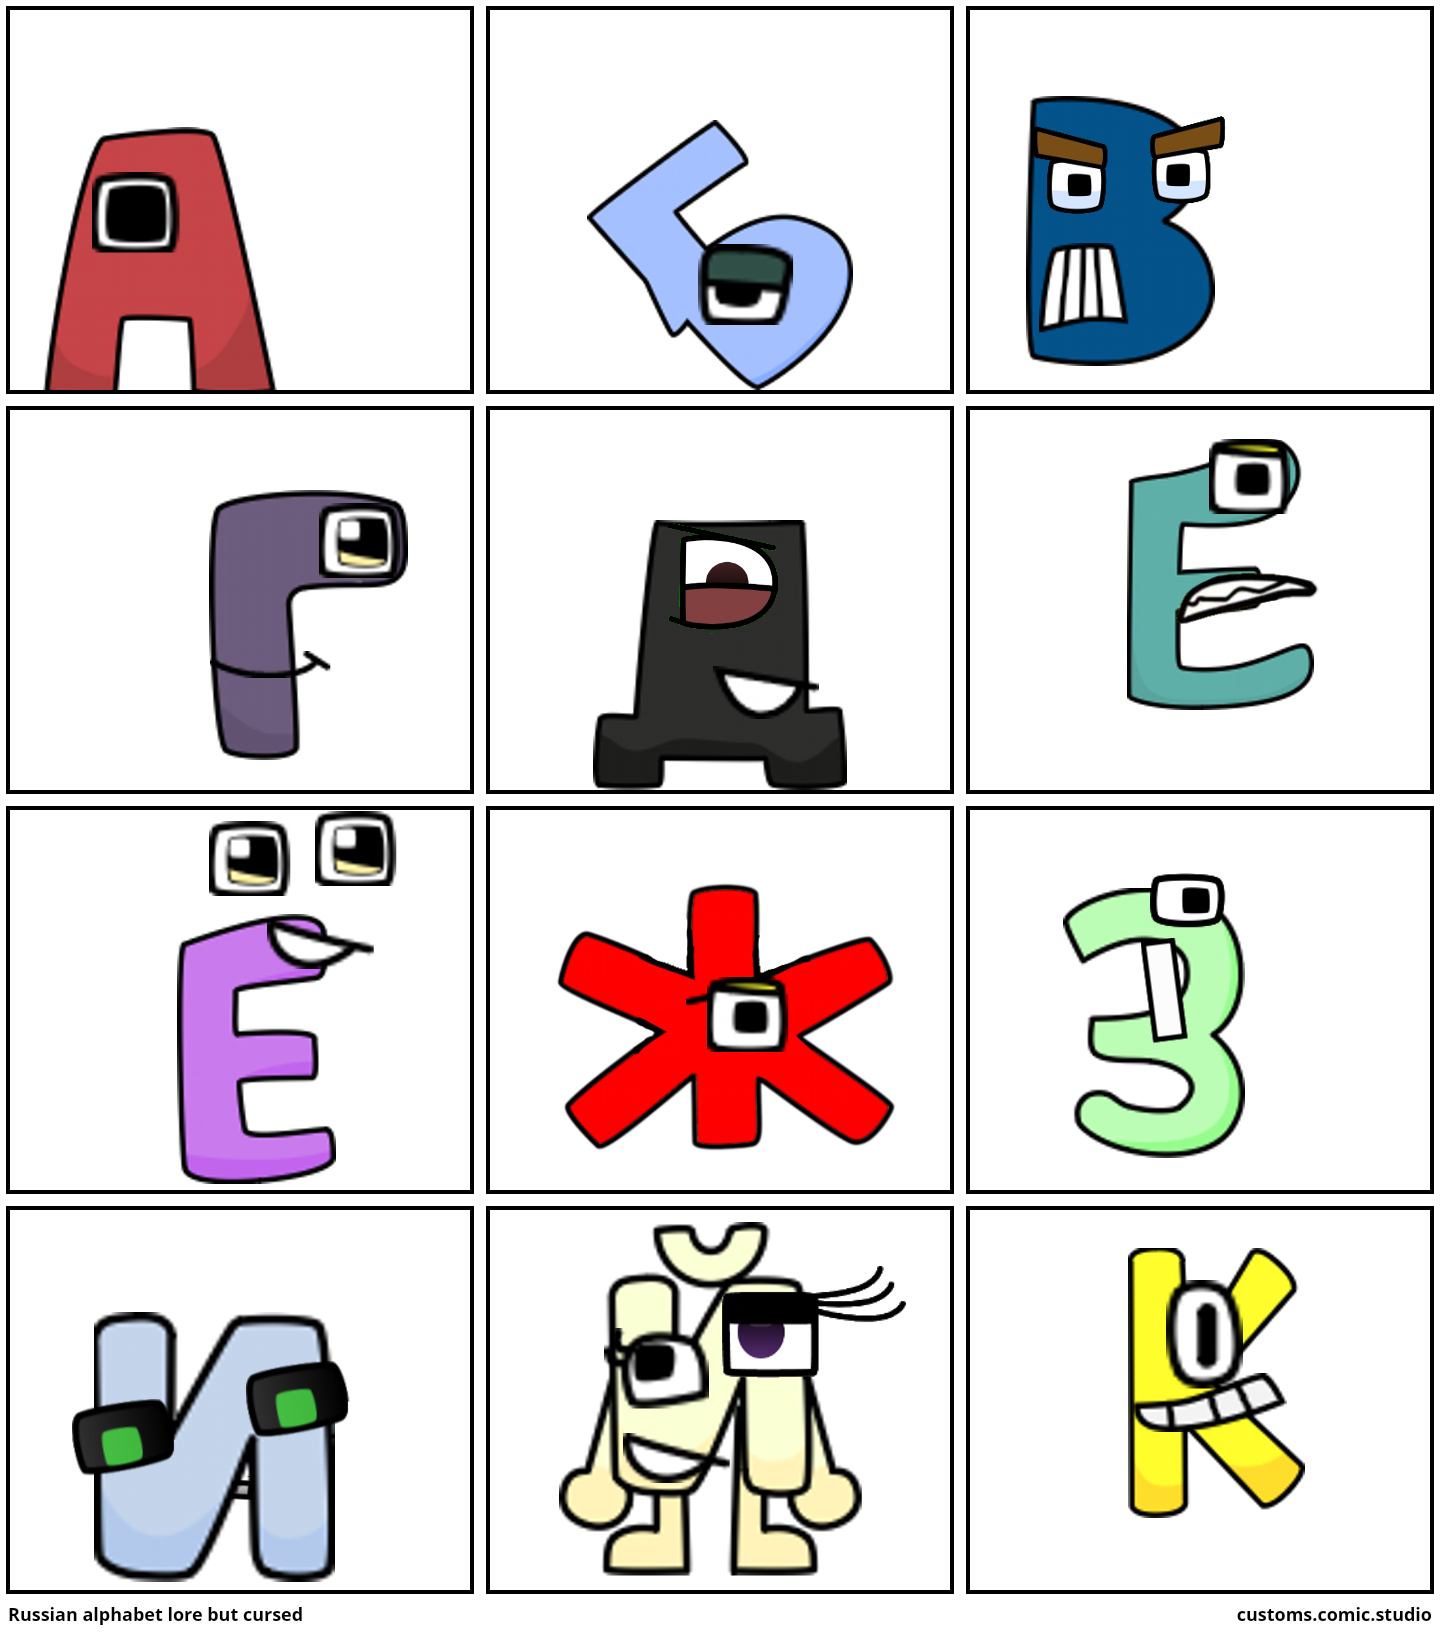 Cursed Russian Alphabet Lore (PART 2) - Comic Studio